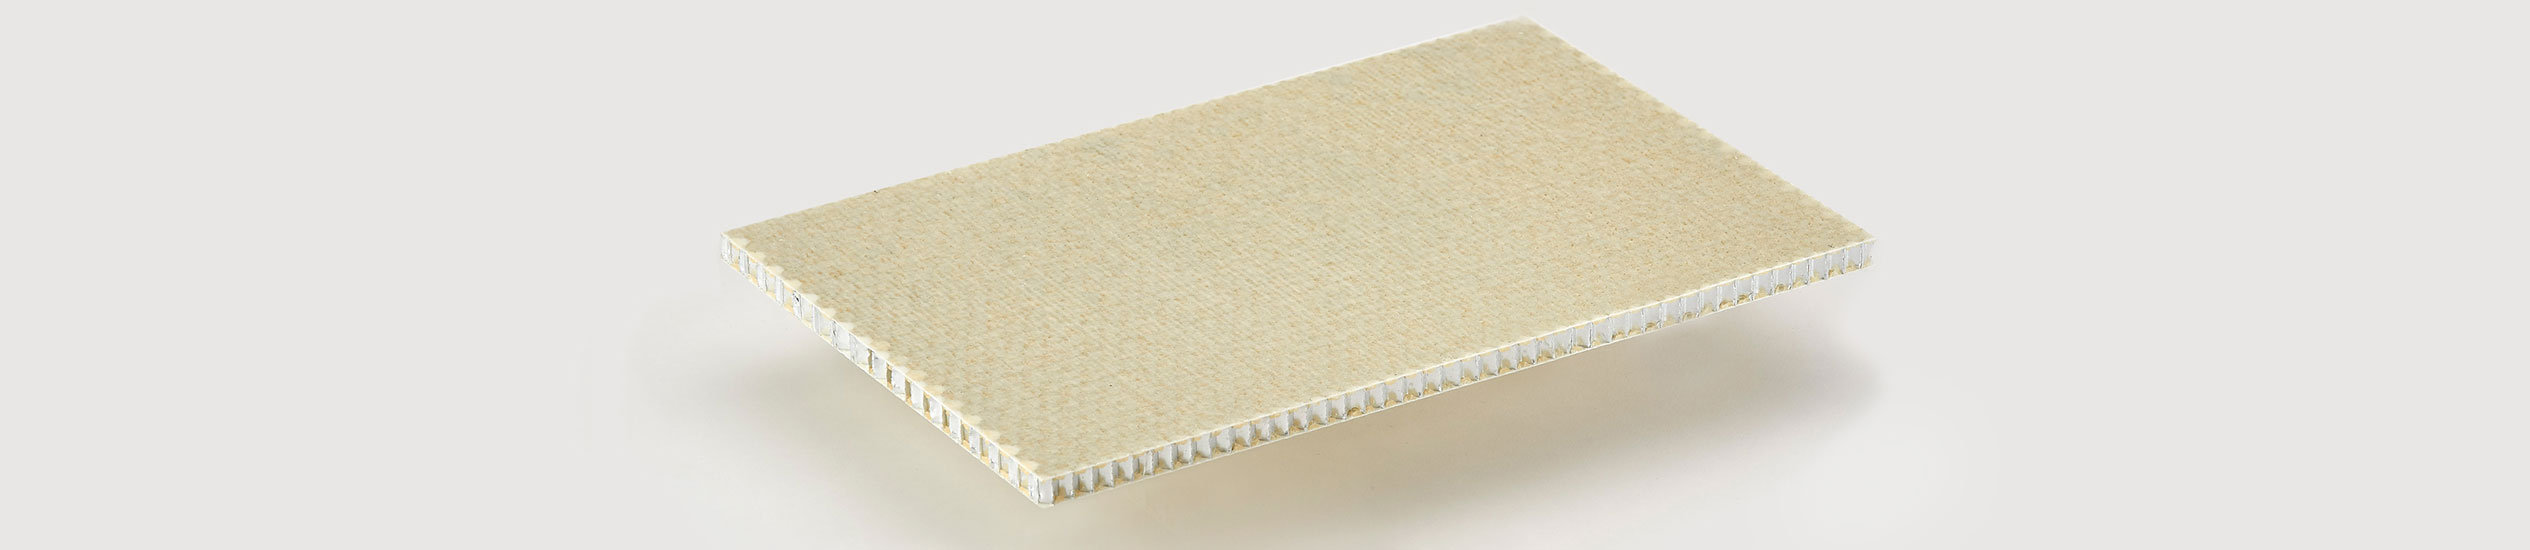 L'ALUSTEP® 500 Light est un panneau sandwich en nid d'abeille d'aluminium avec des peaux en fibre de verre imprégnées de résine époxy.